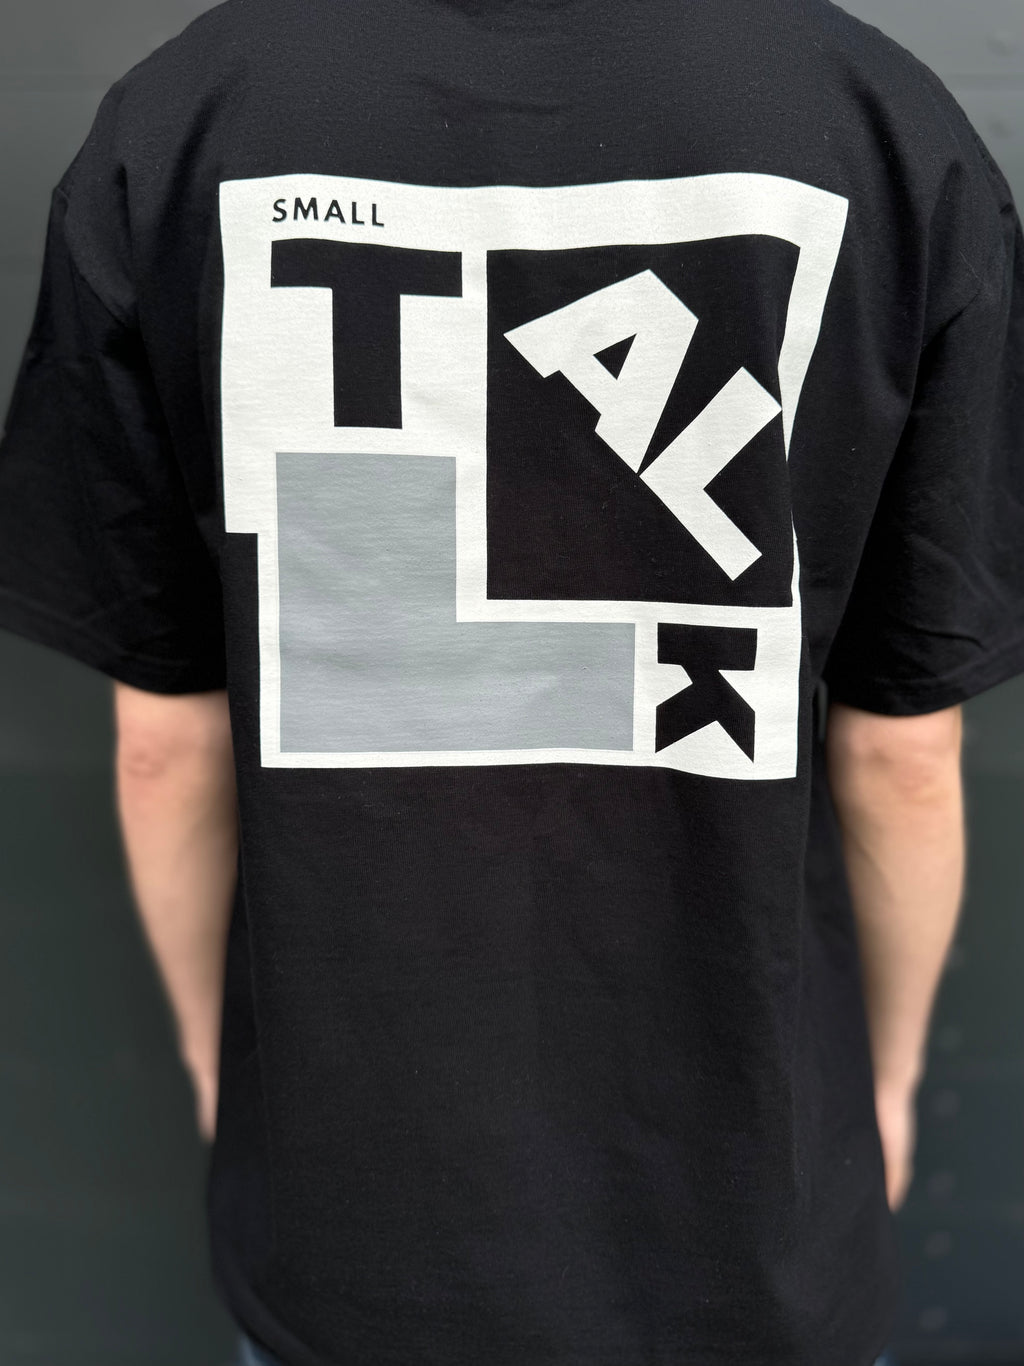 Trash / Small Talk T shirt